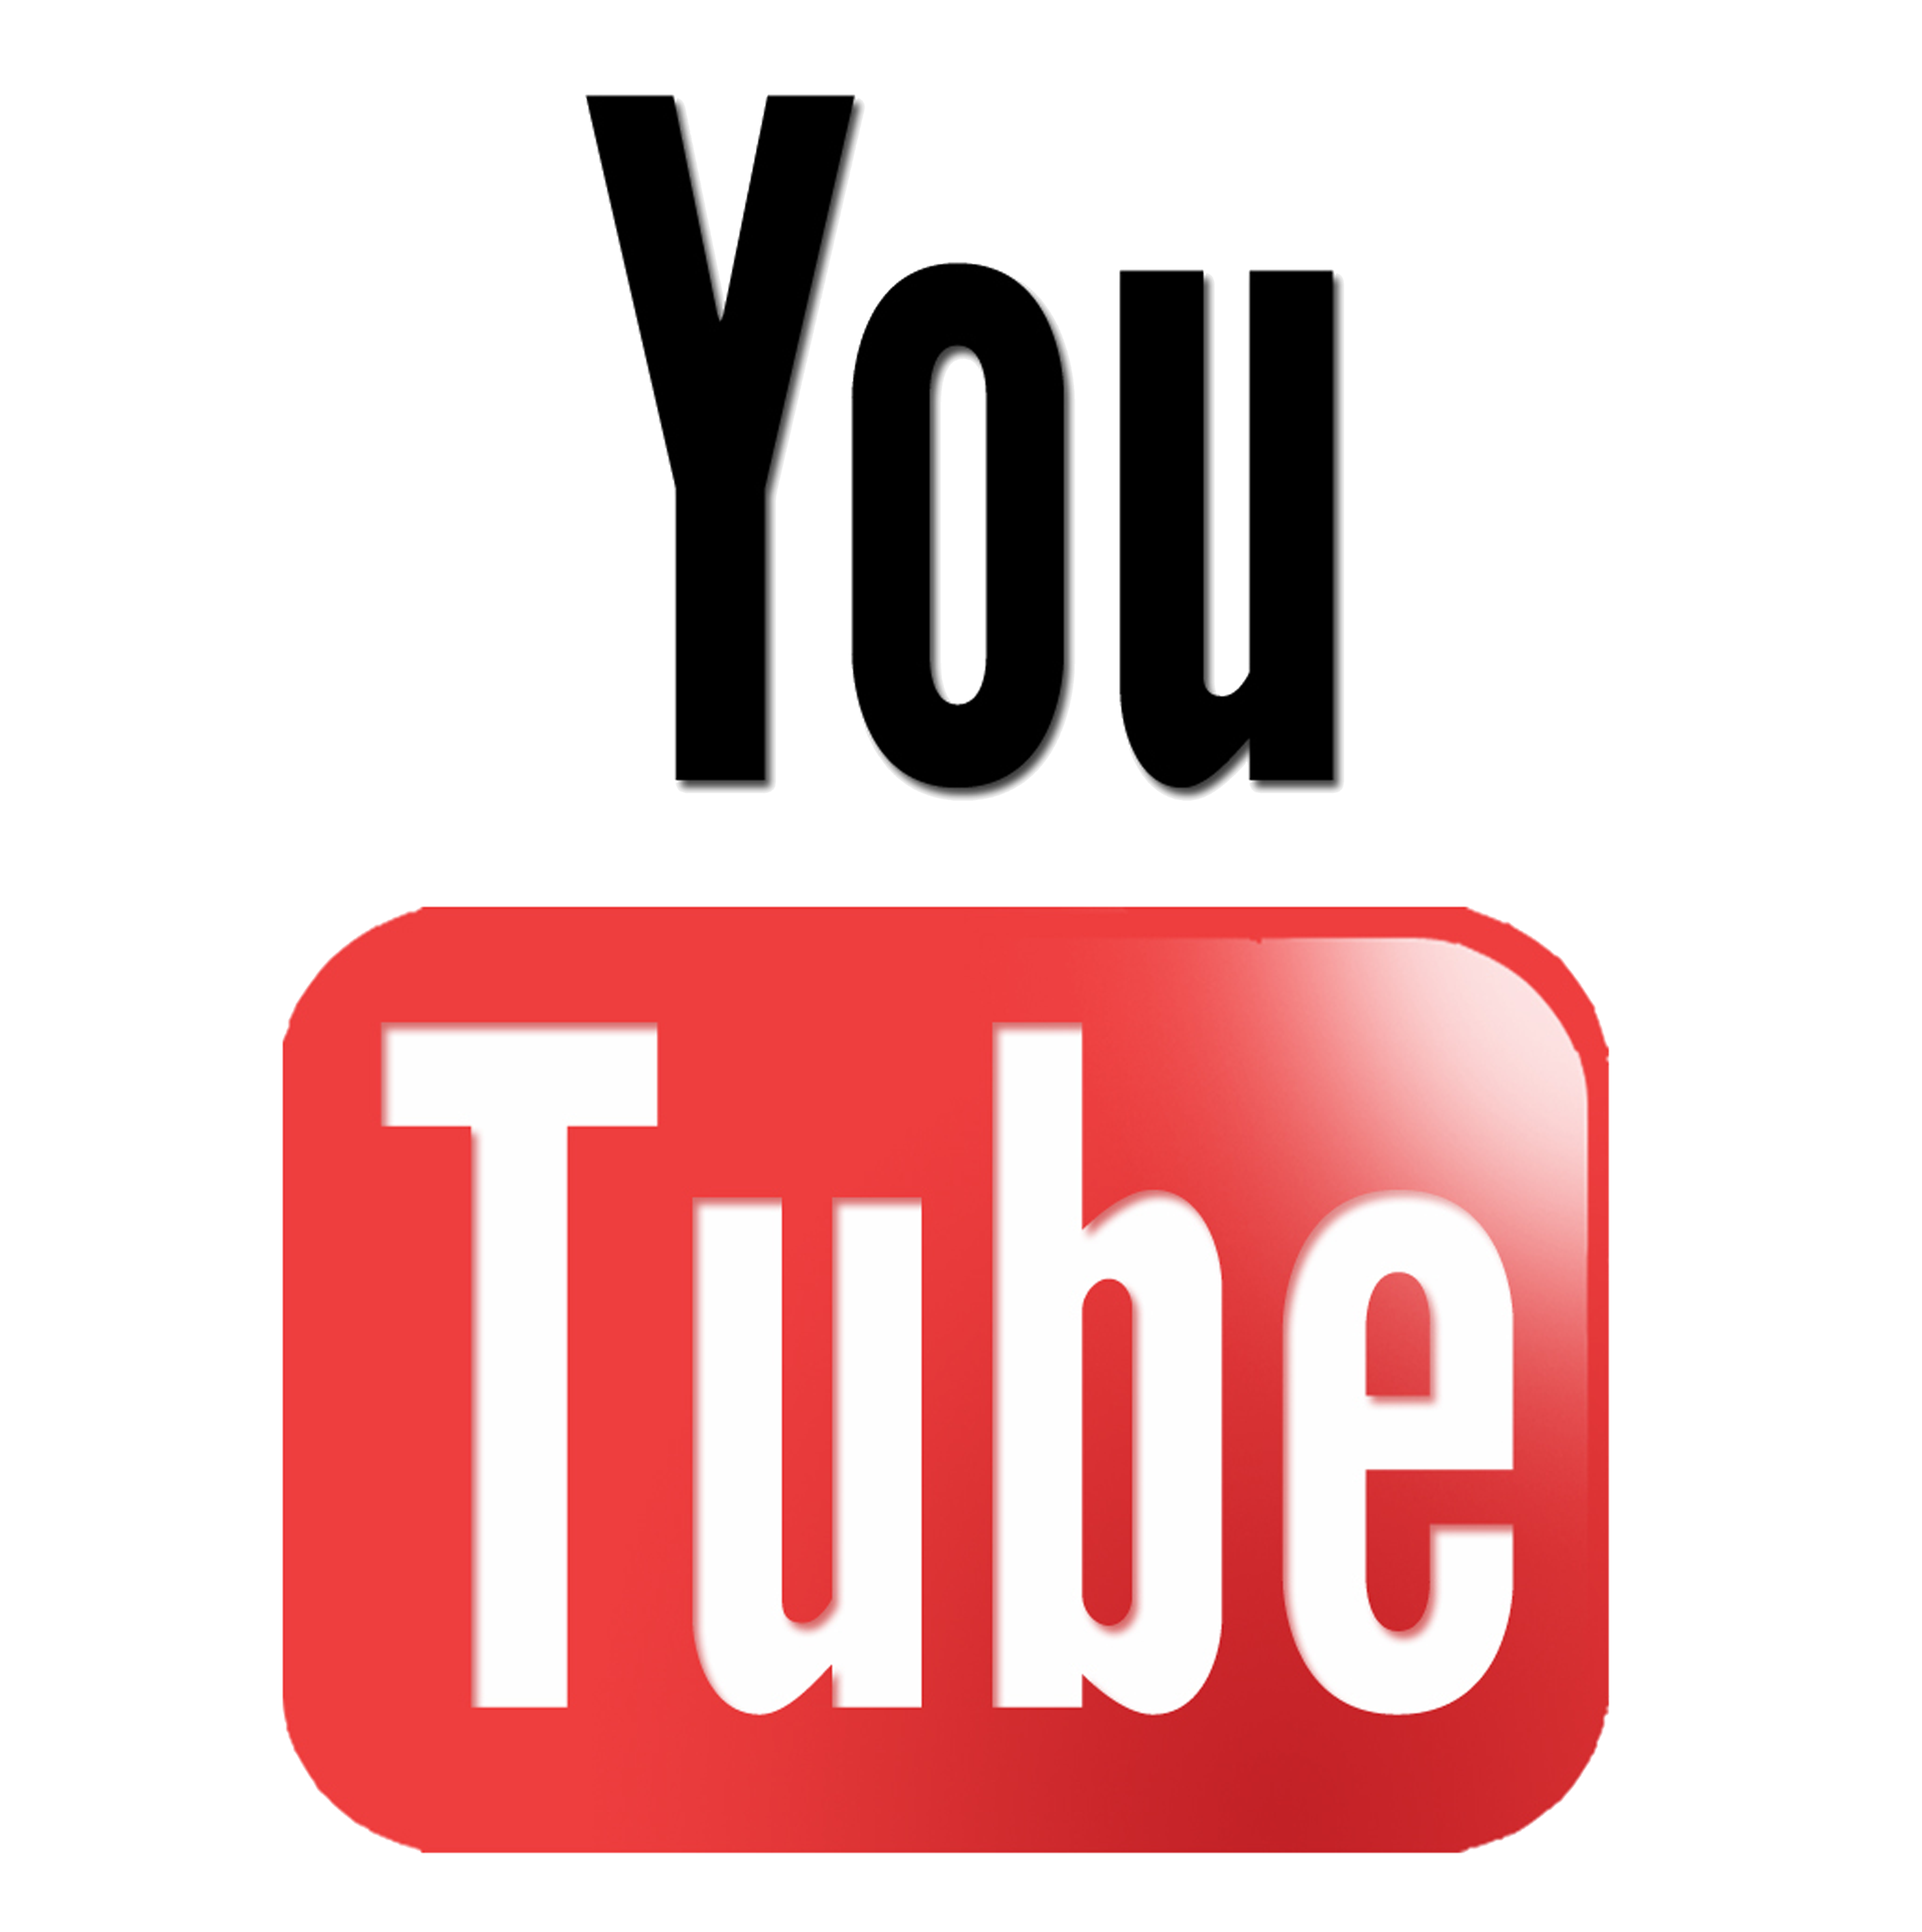 YouTube Logo - YouTube Transparent Background png download - 2000*2421 -  Free Transparent Youtube png Download. - Clip Art Library